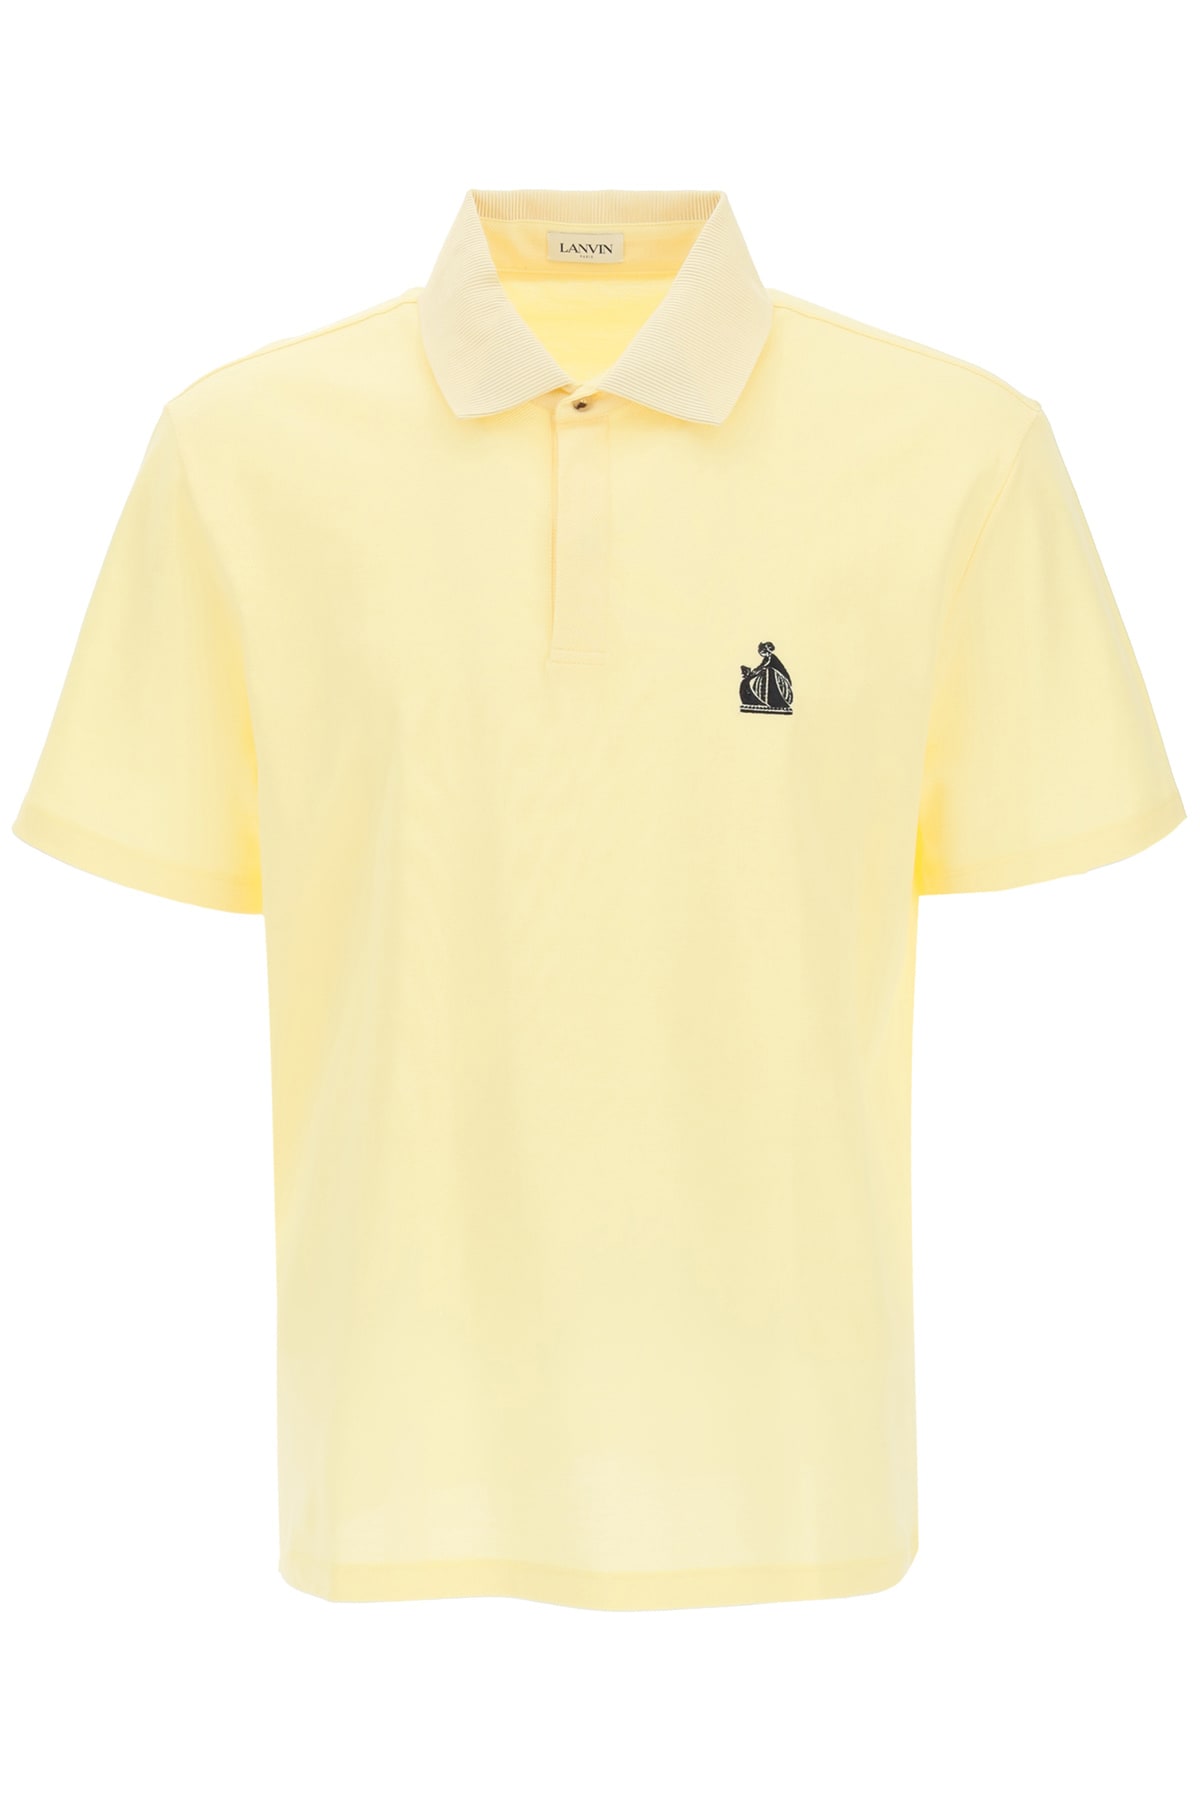 Lanvin Polo Shirt With Grosgrain Collar